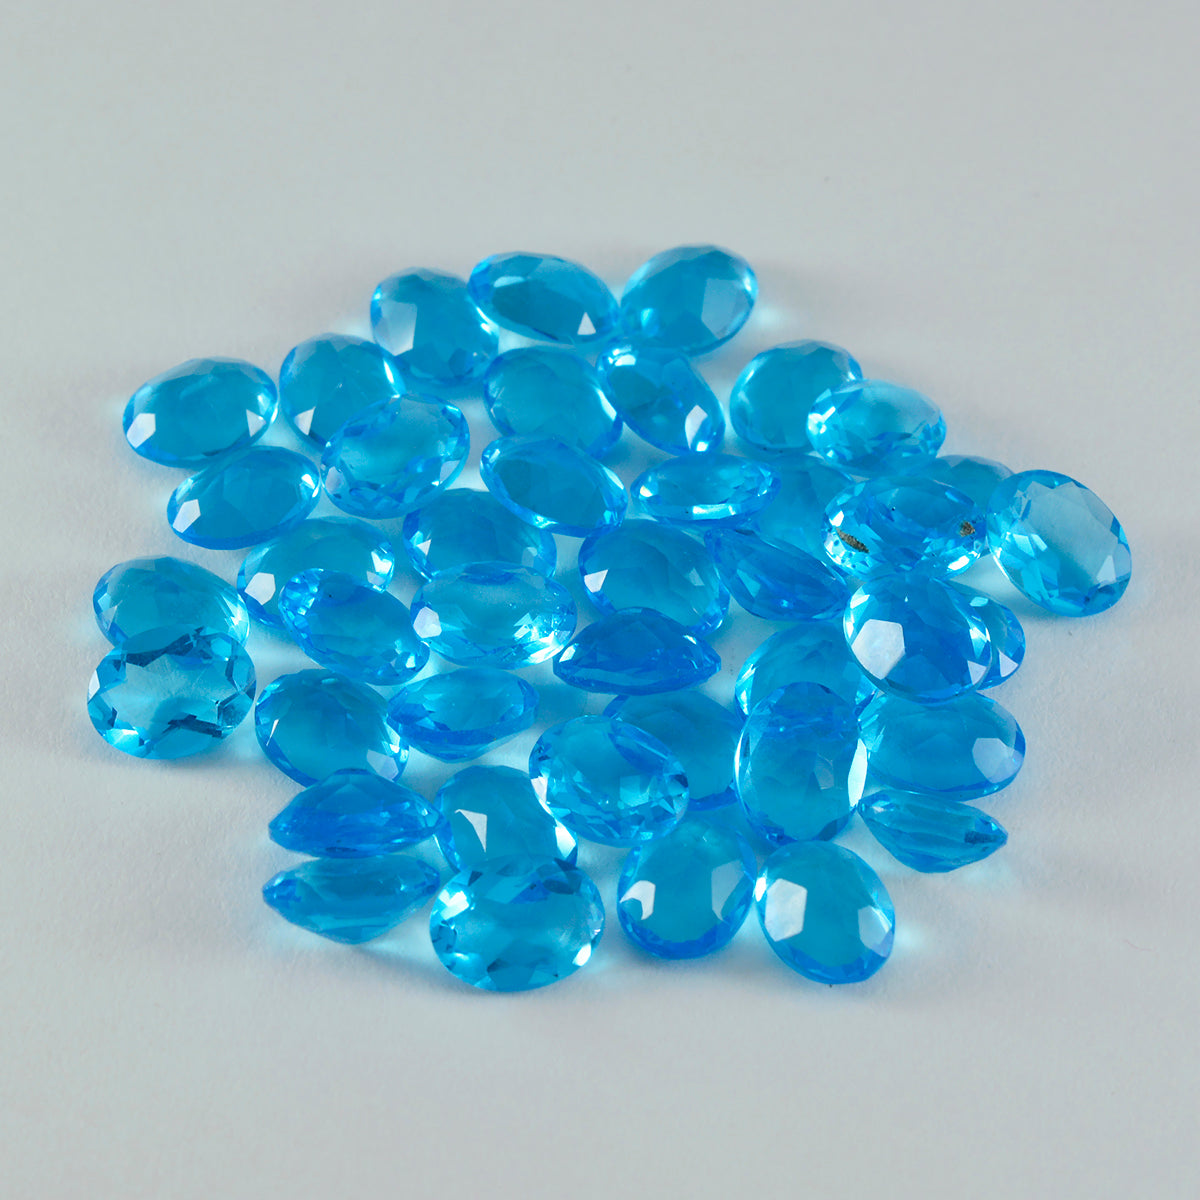 Riyogems 1PC Blue Topaz CZ gefacetteerd 5x7 mm ovale vorm edelstenen van goede kwaliteit